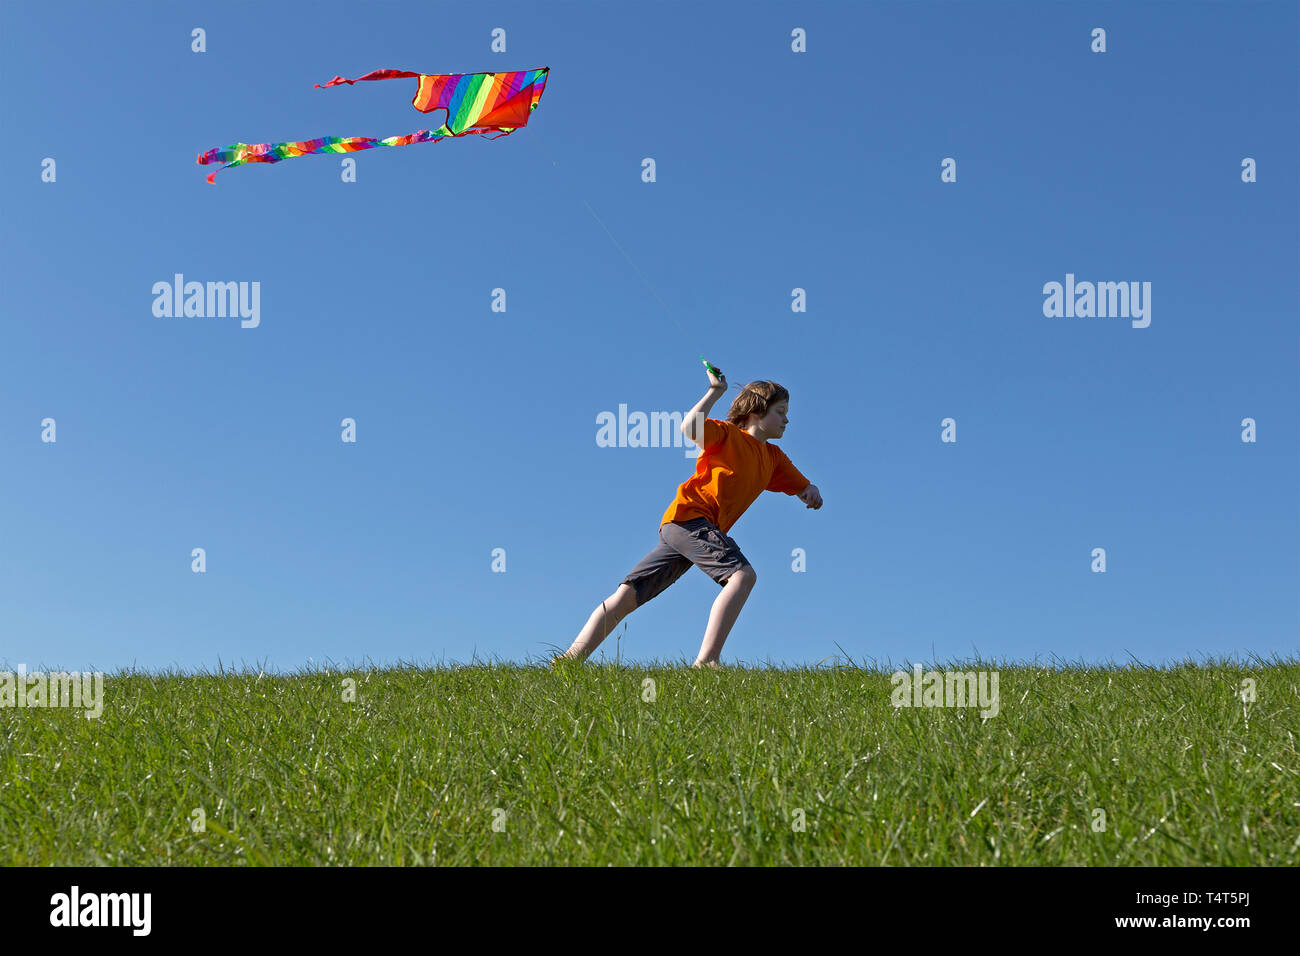 boy flying kite, Wilhelmsburg, Hamburg, Germany Stock Photo